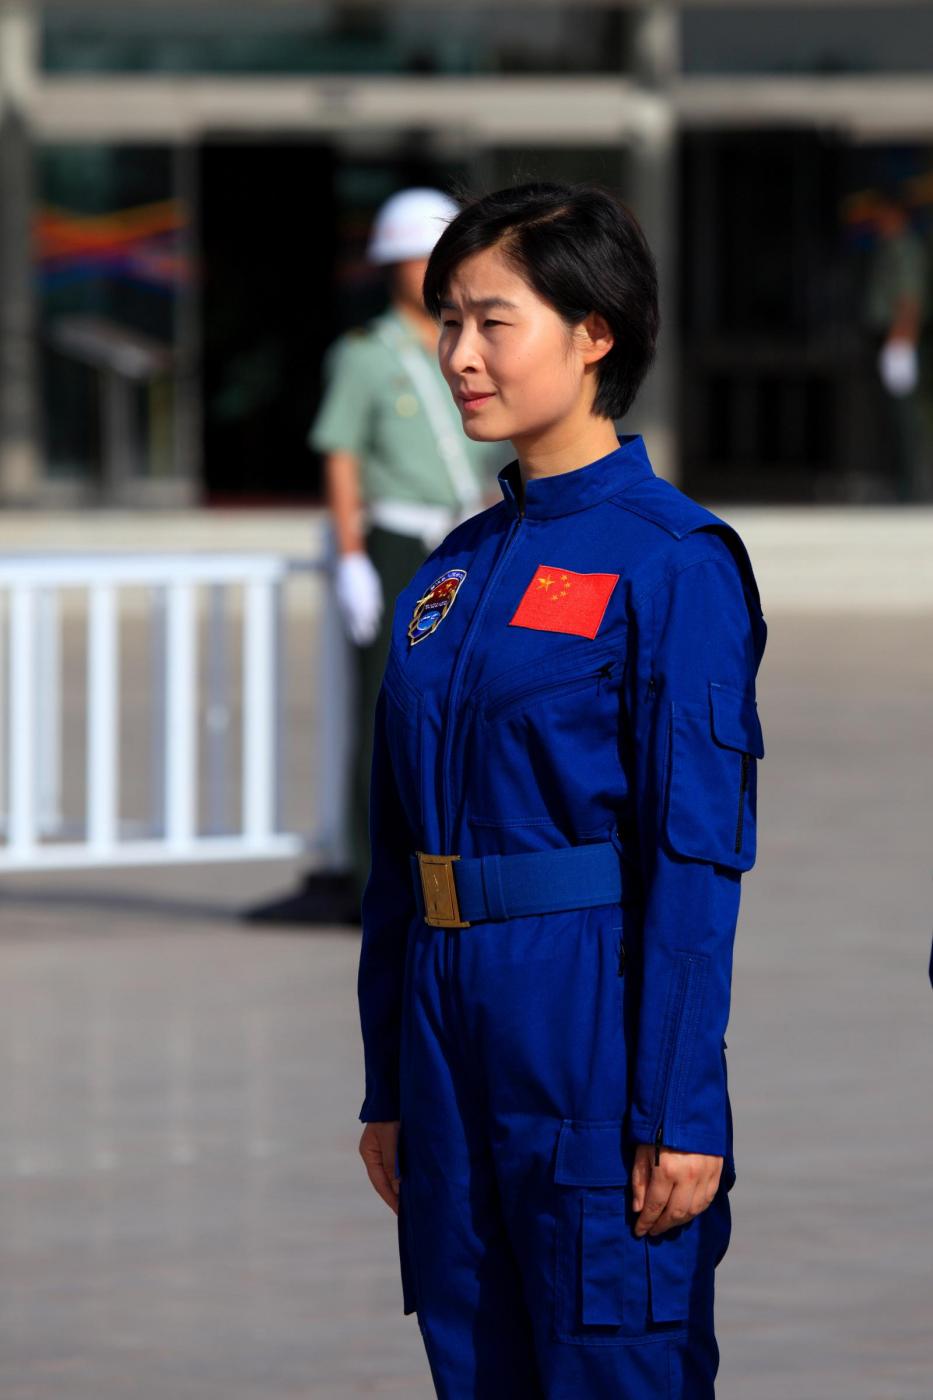 Cina, conferenza missione nello spazio01